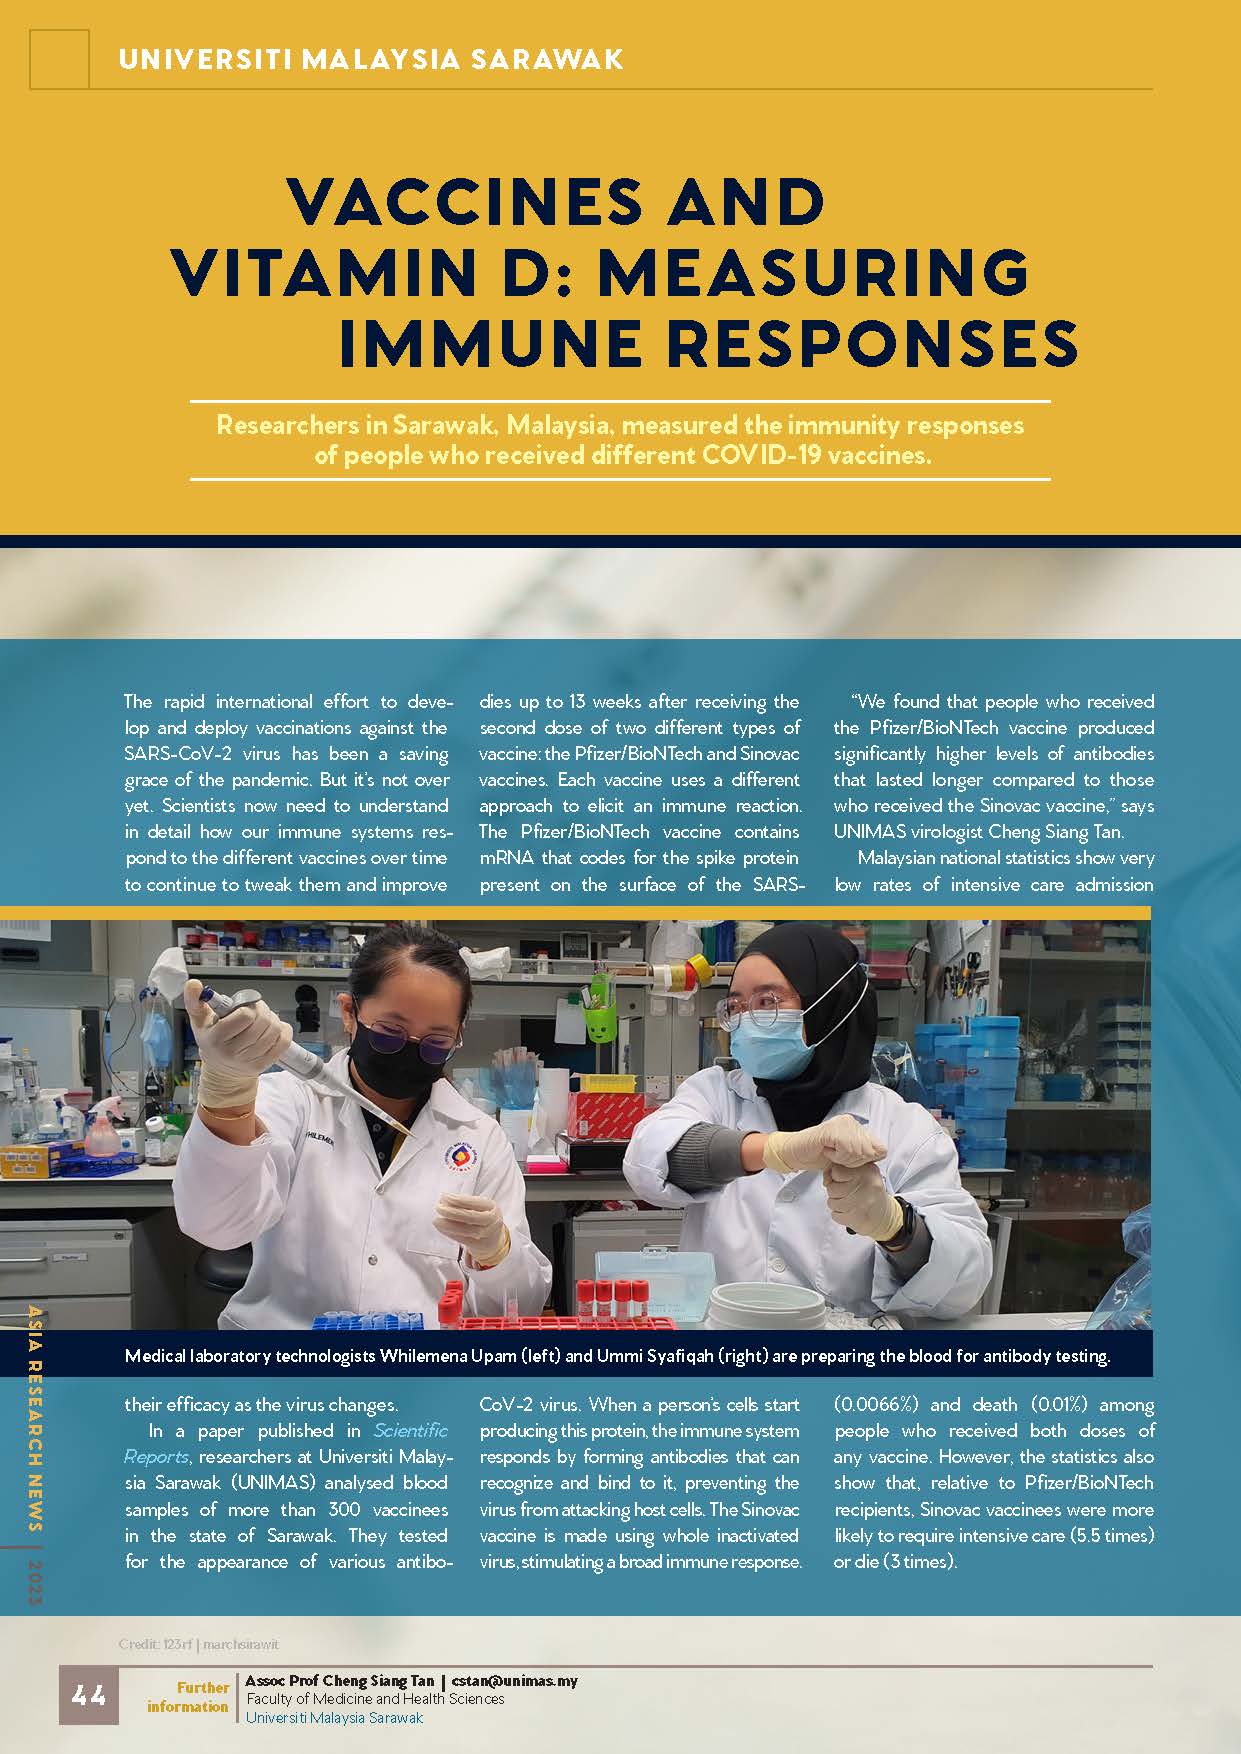 UNIMAS Immune Response 150dpi_Page_1.jpg